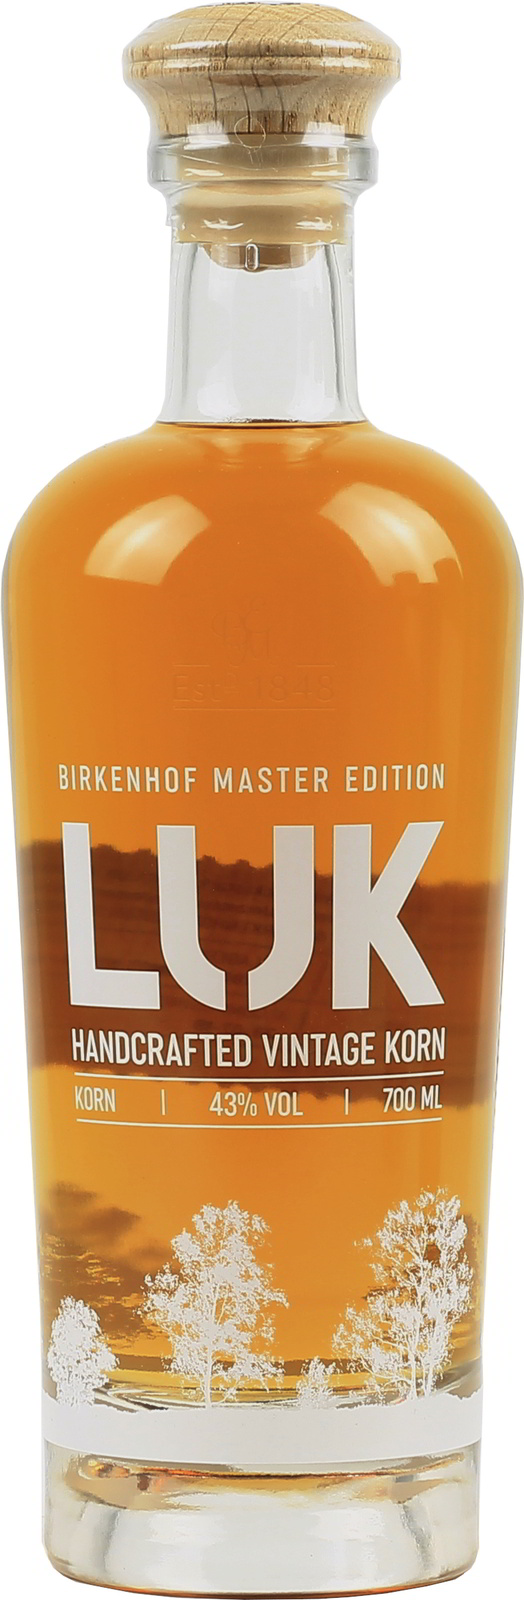 Birkenhof LUK Handcrafted exquisit Vintage Korn